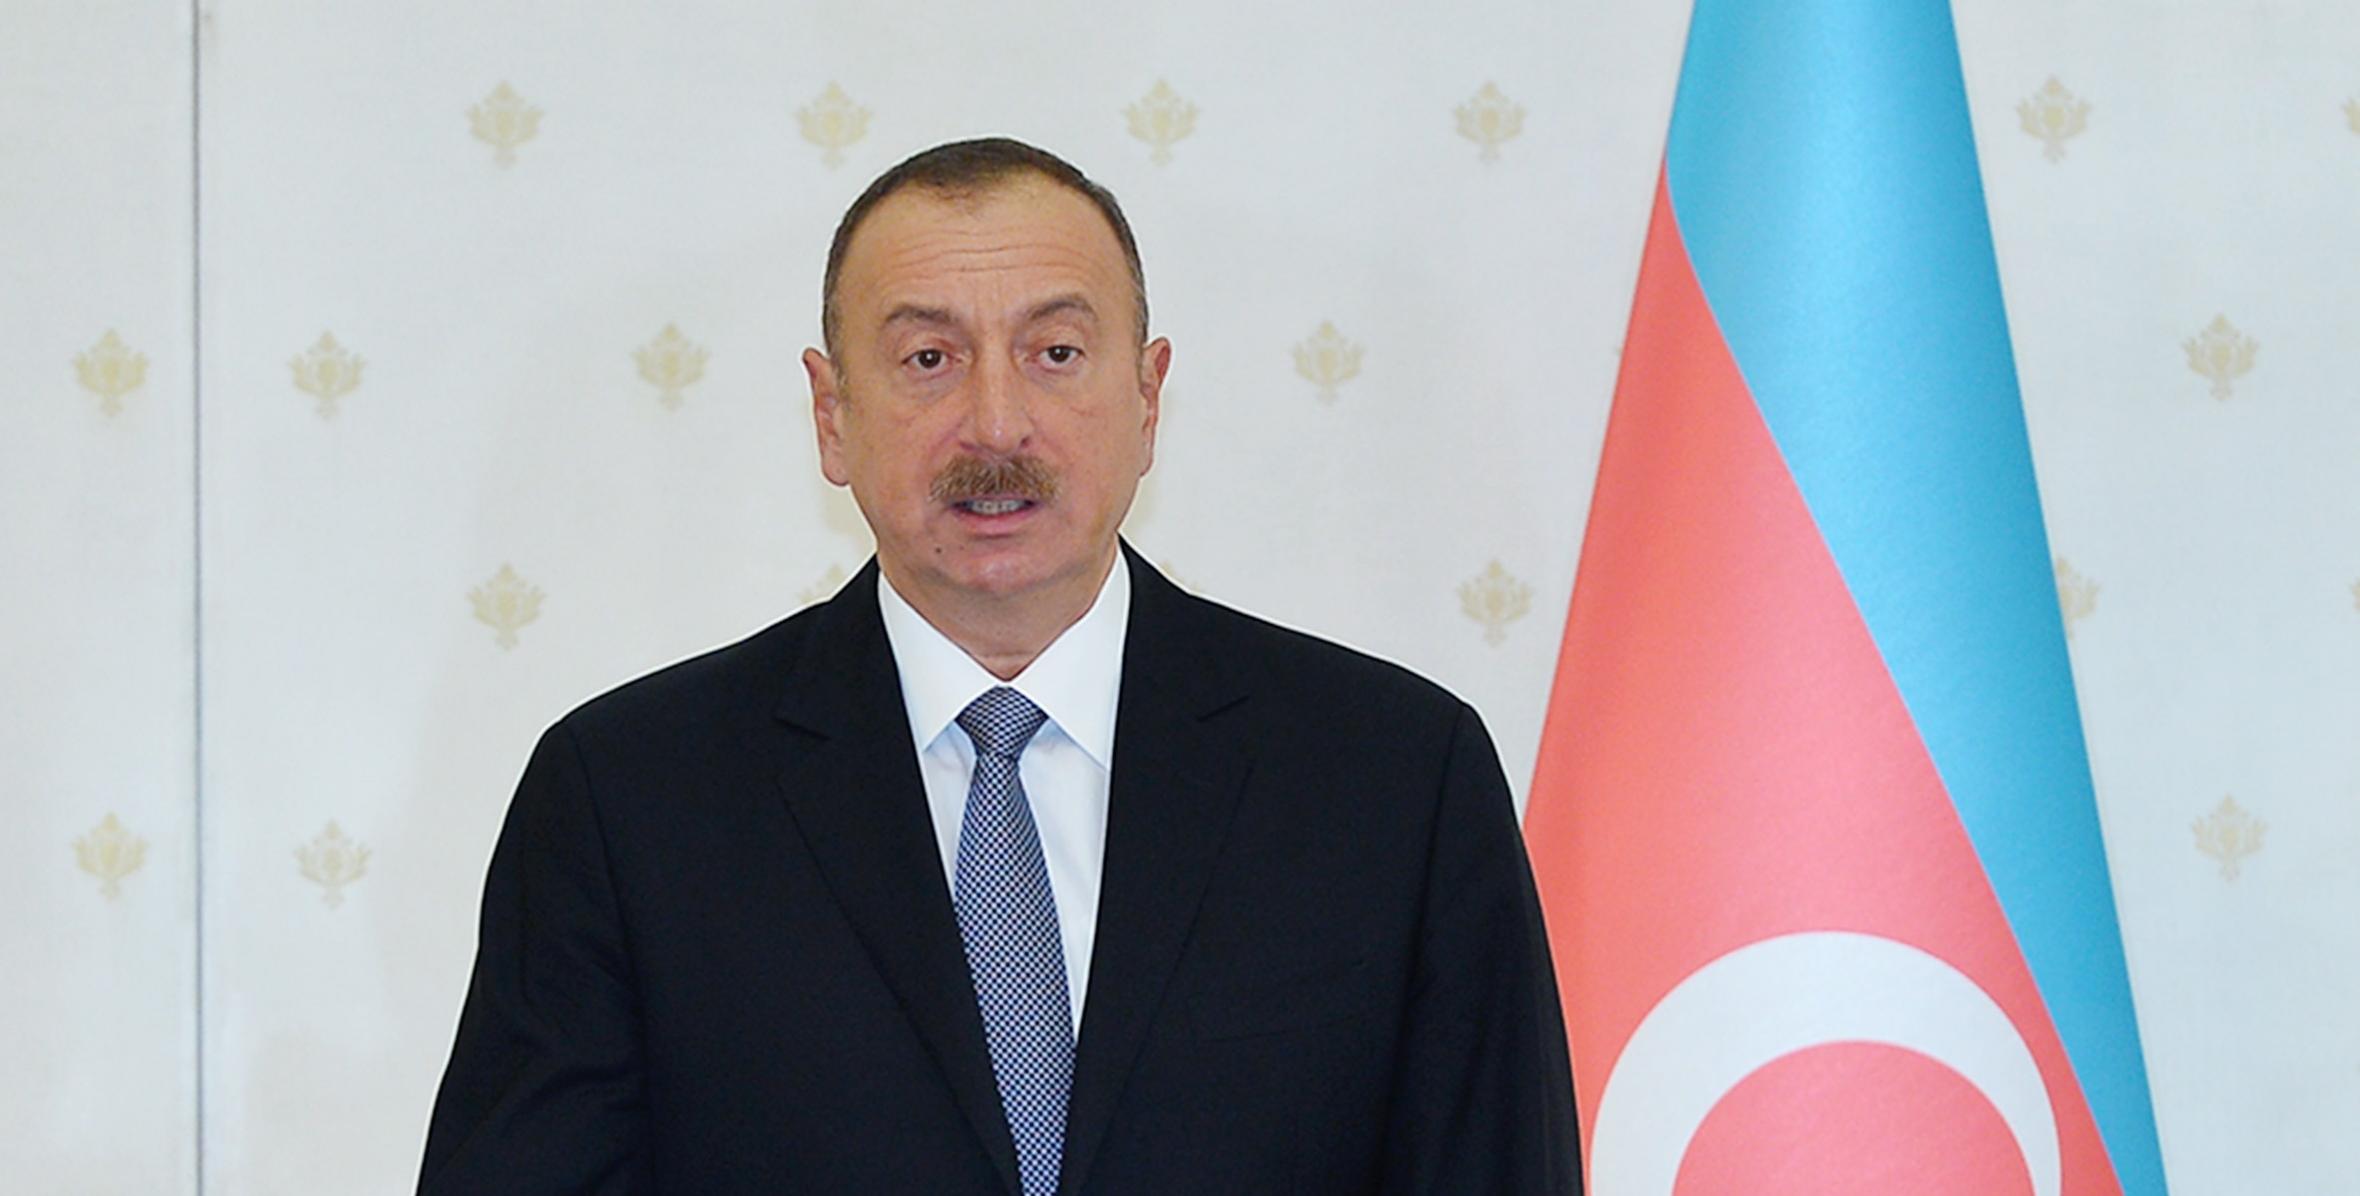 Вступительная речь Ильхама Алиева на заседании Кабинета Министров, посвященное итогам социально-экономического развития в 2016 году и предстоящим задачам